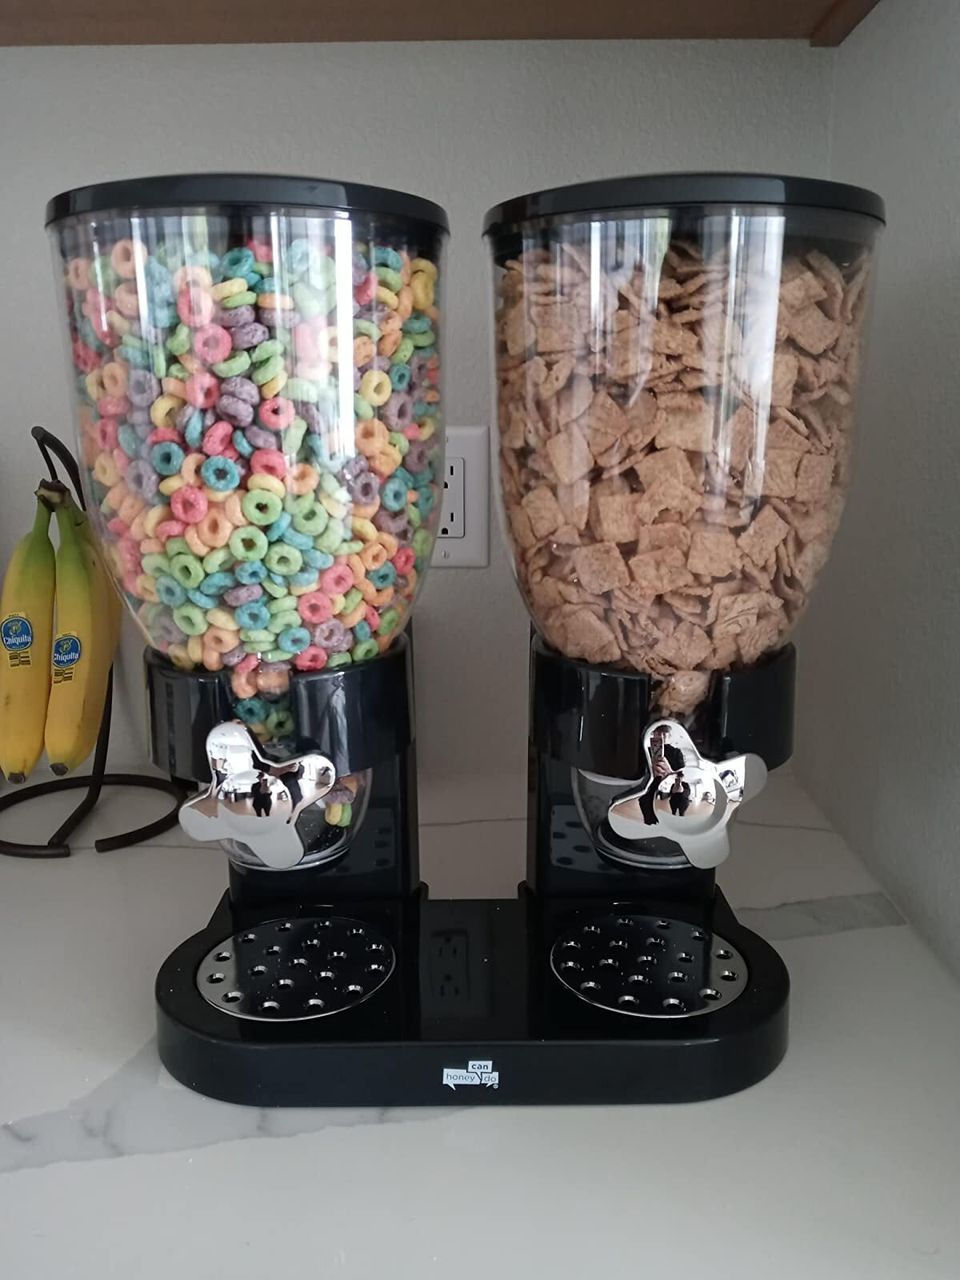 A cereal dispenser